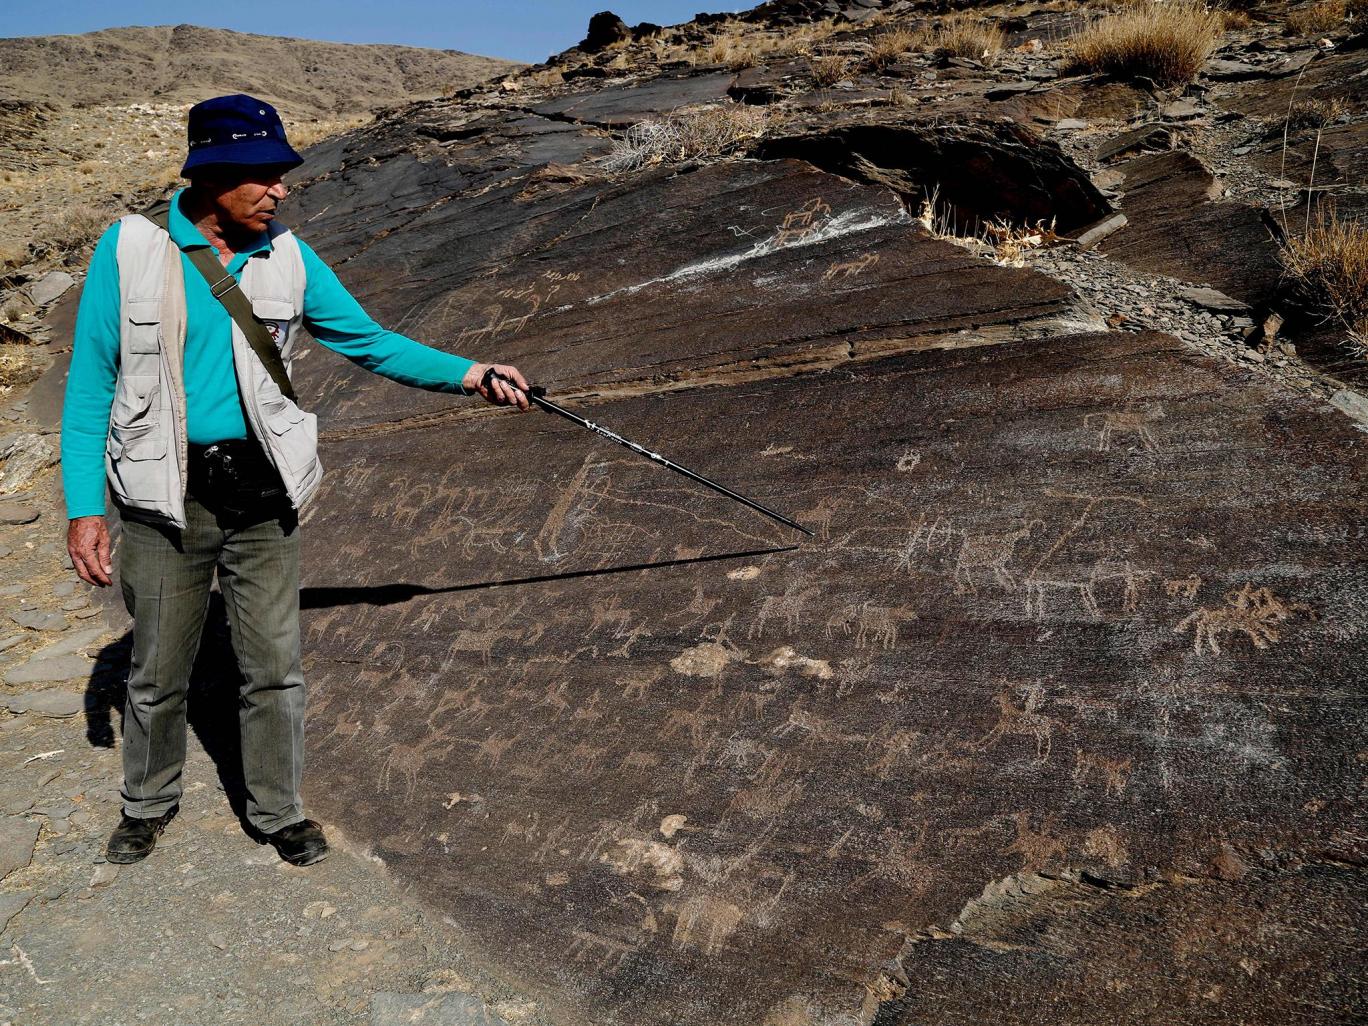 احتمال کشف قدیمی ترین سنگ نگاره های جهان در ایران (+عکس)